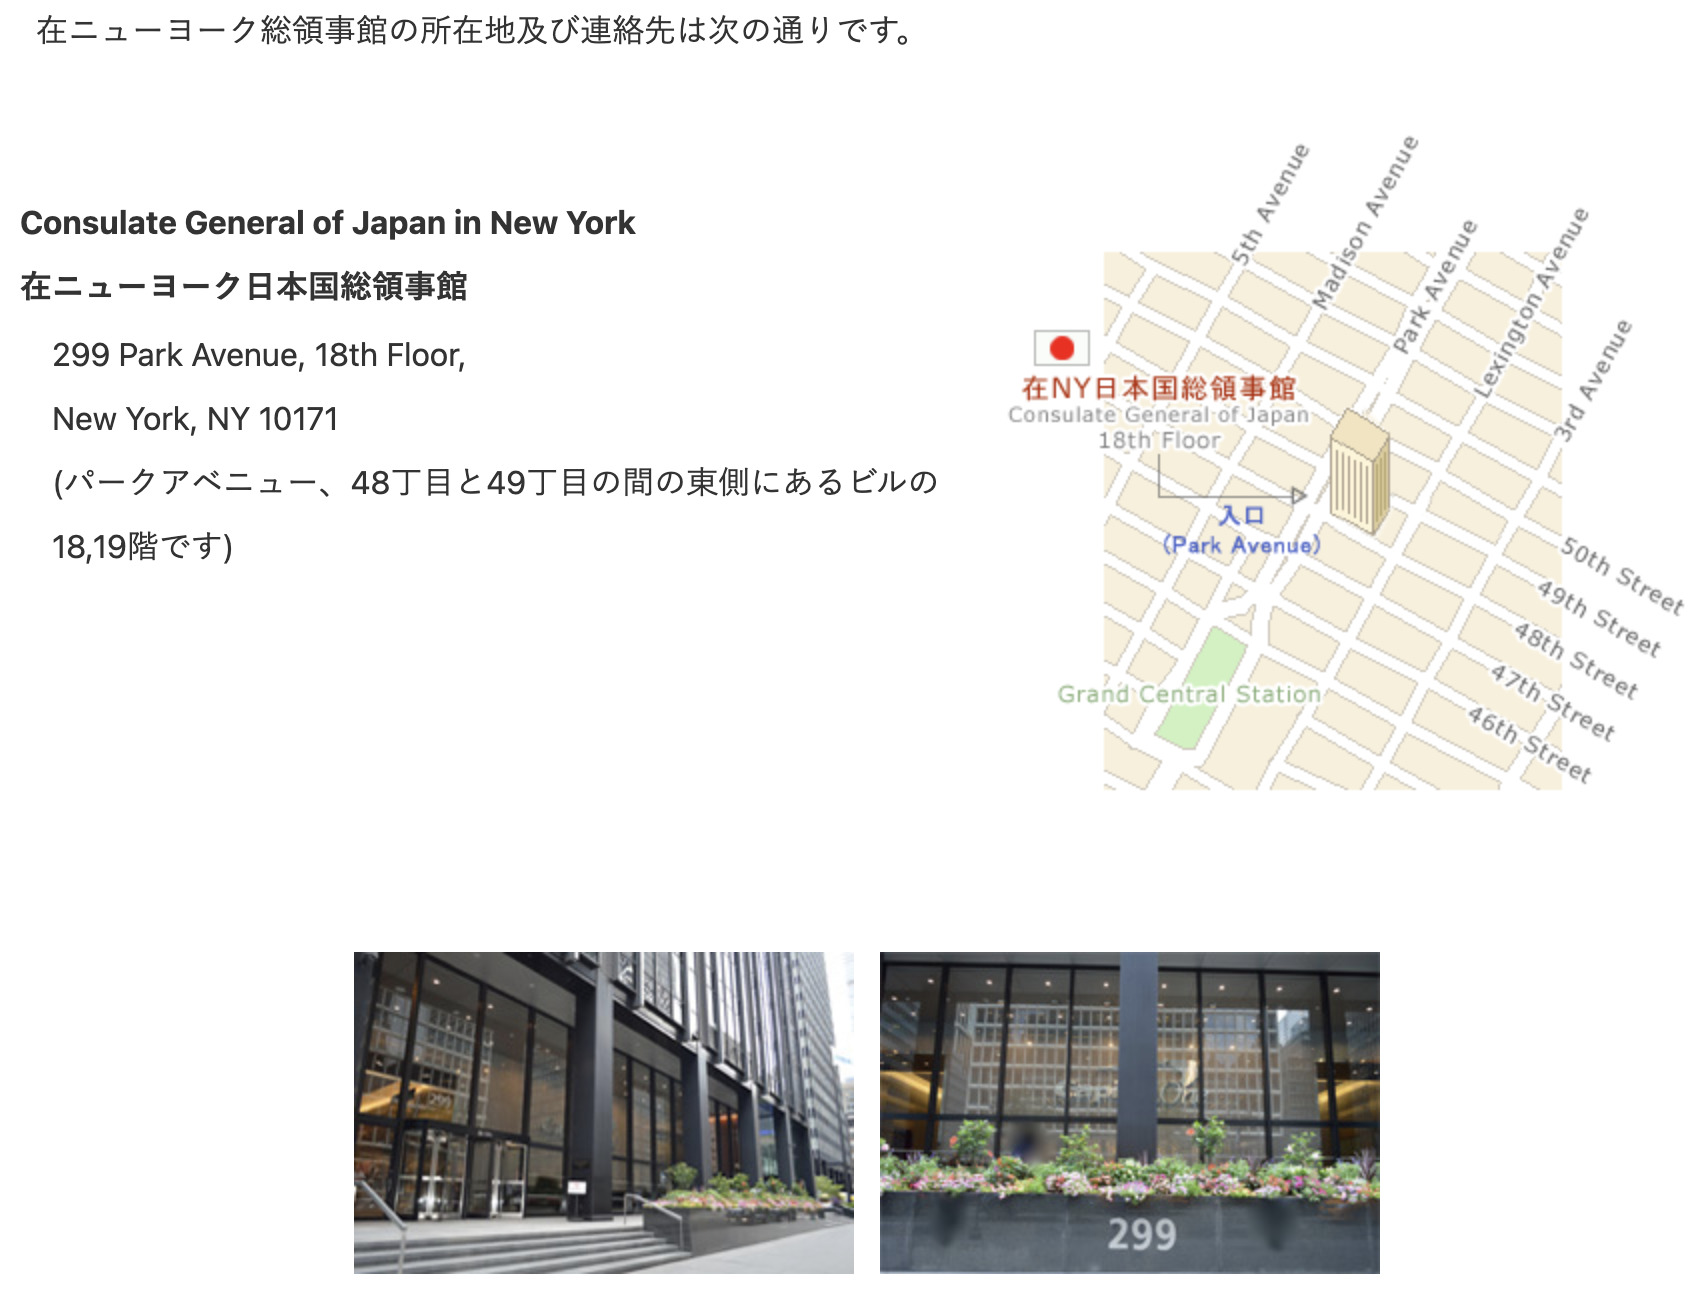 在ニューヨーク日本国大使館(総領事館)の場所【迷うので要注意】